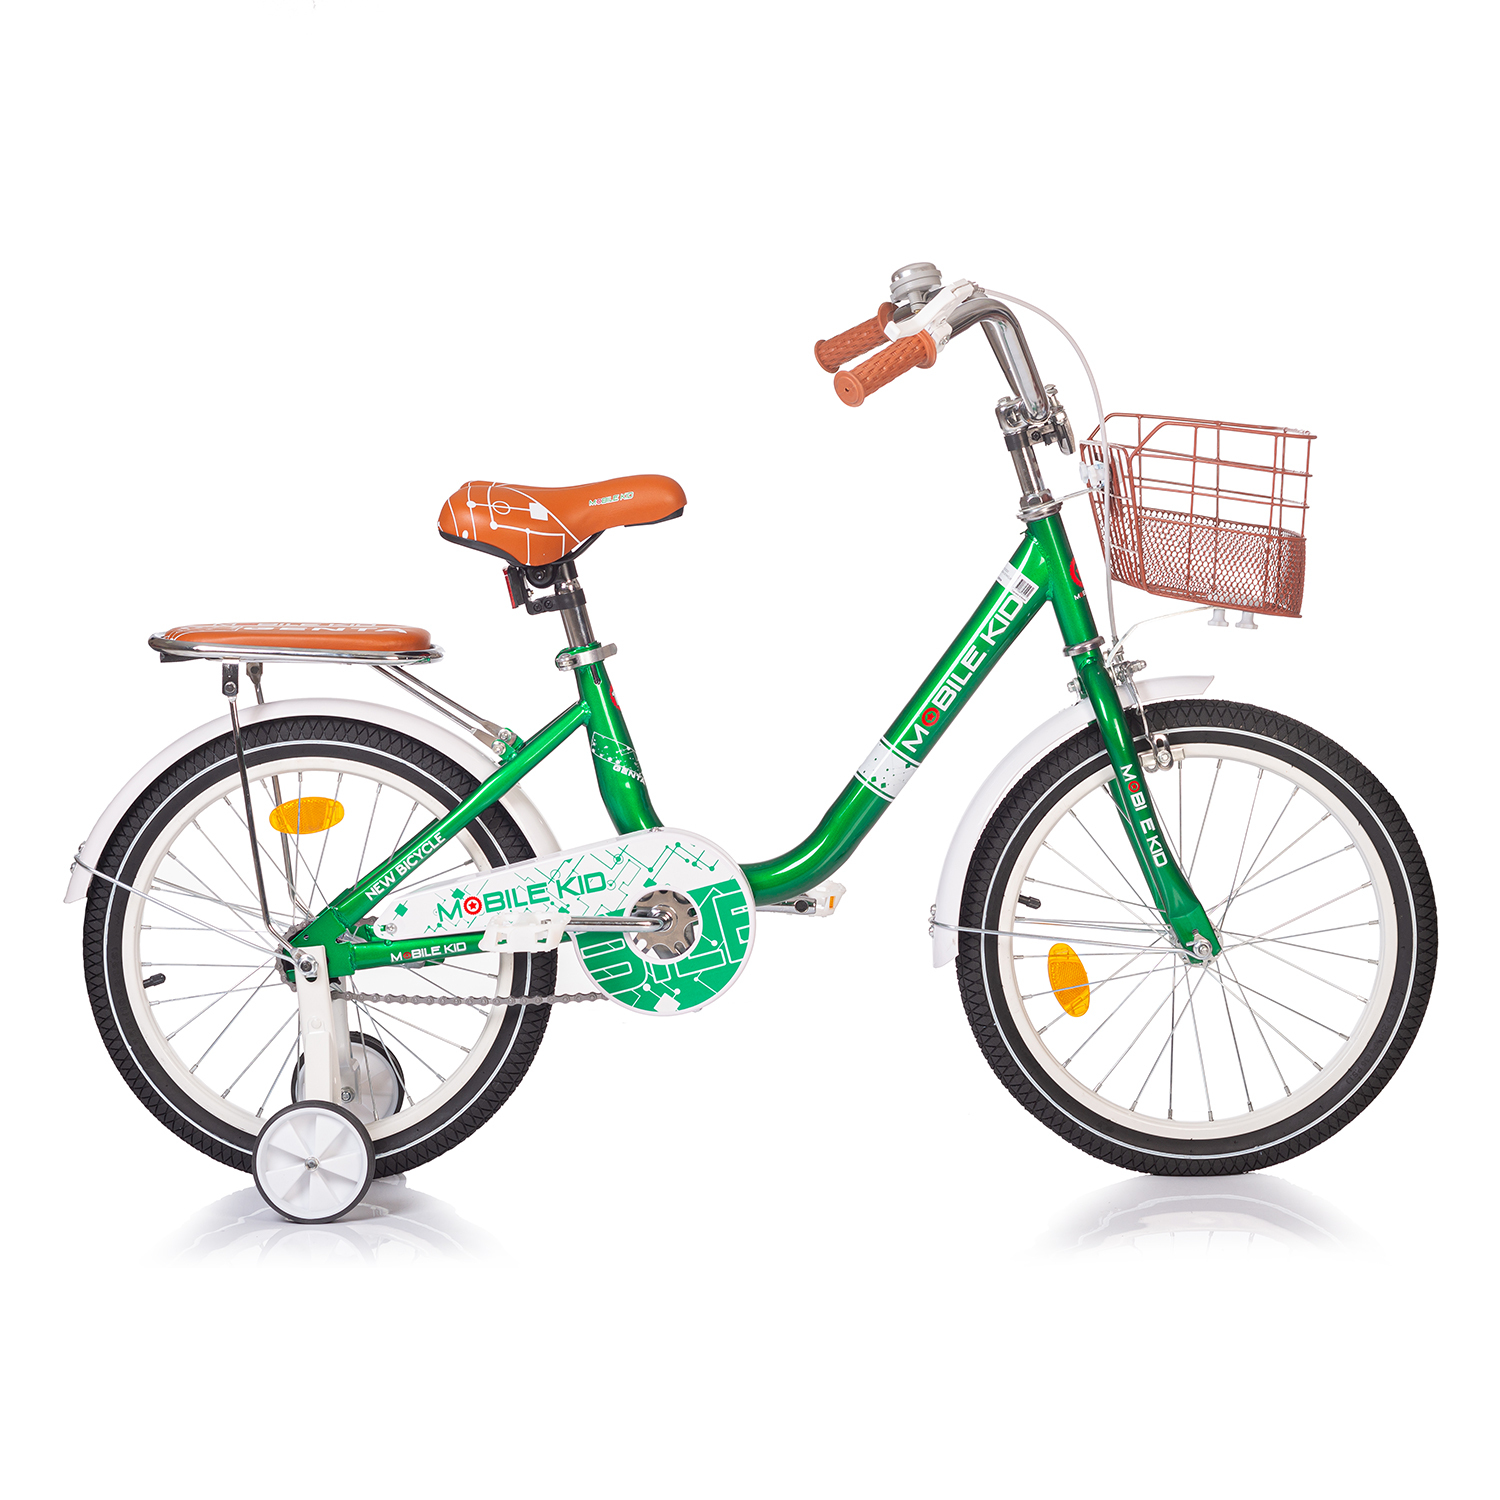 Велосипед Mobile Kid Genta 18 темно-зеленый